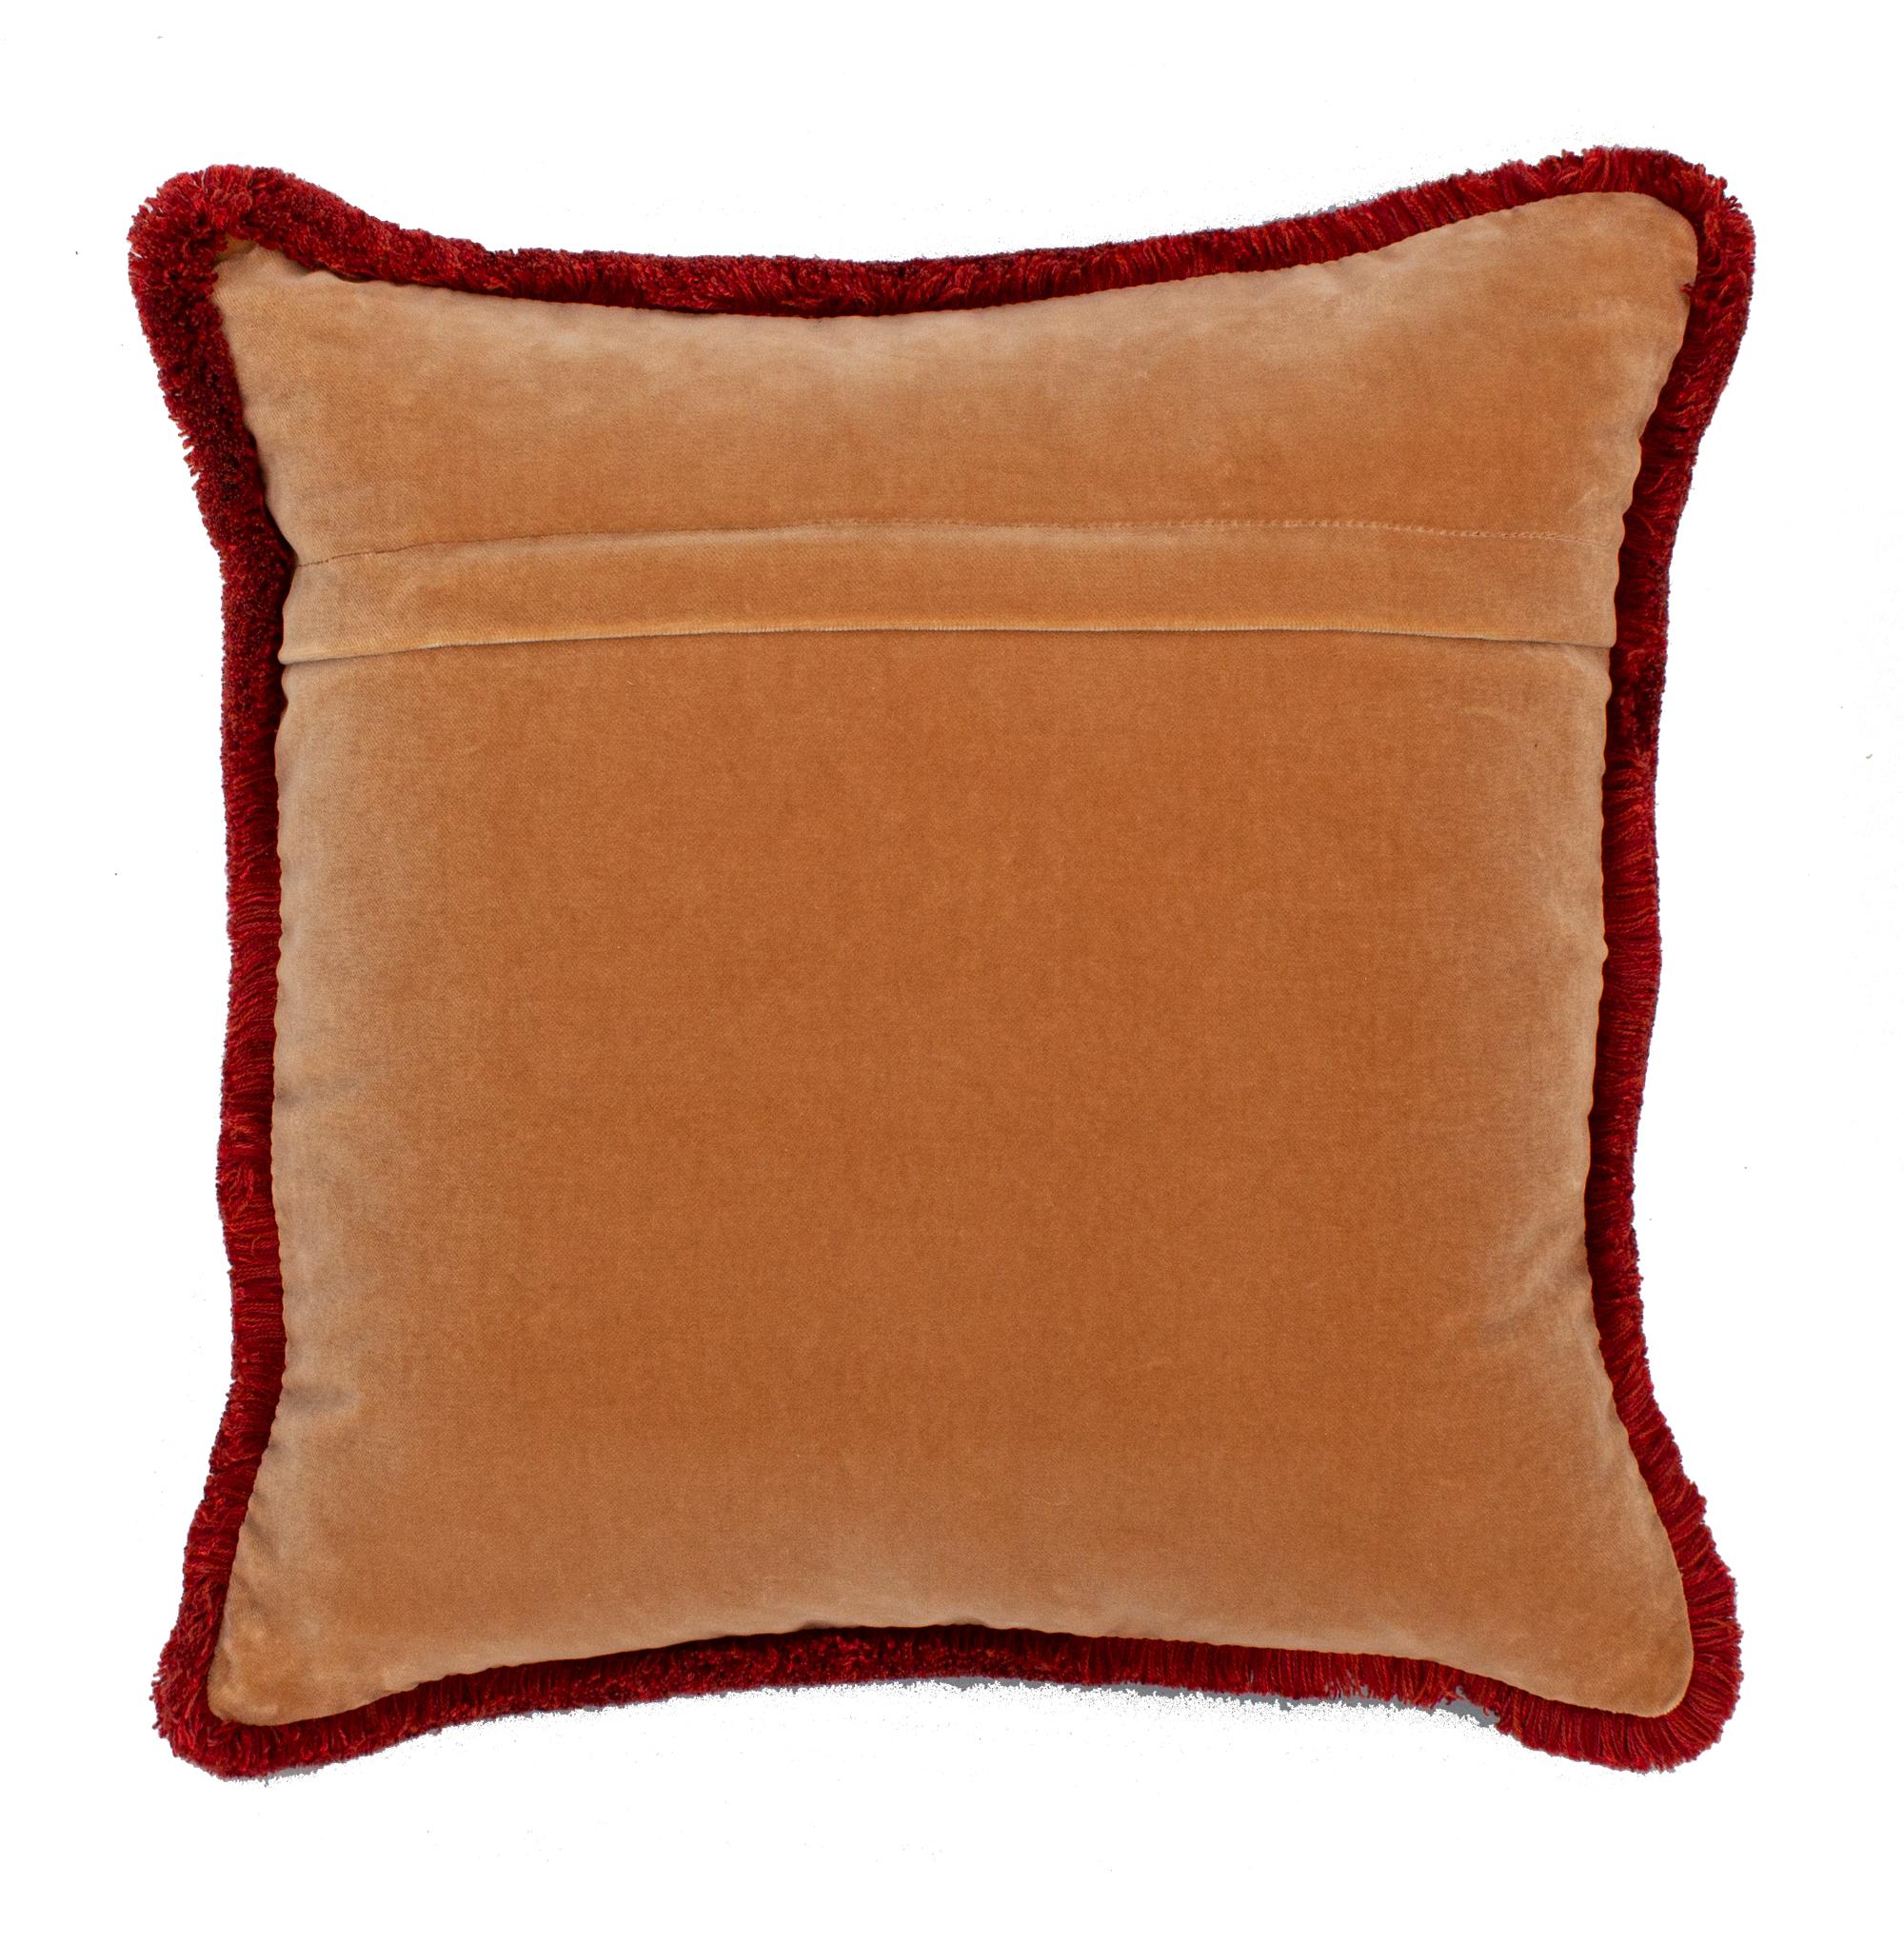 ysl red cushion